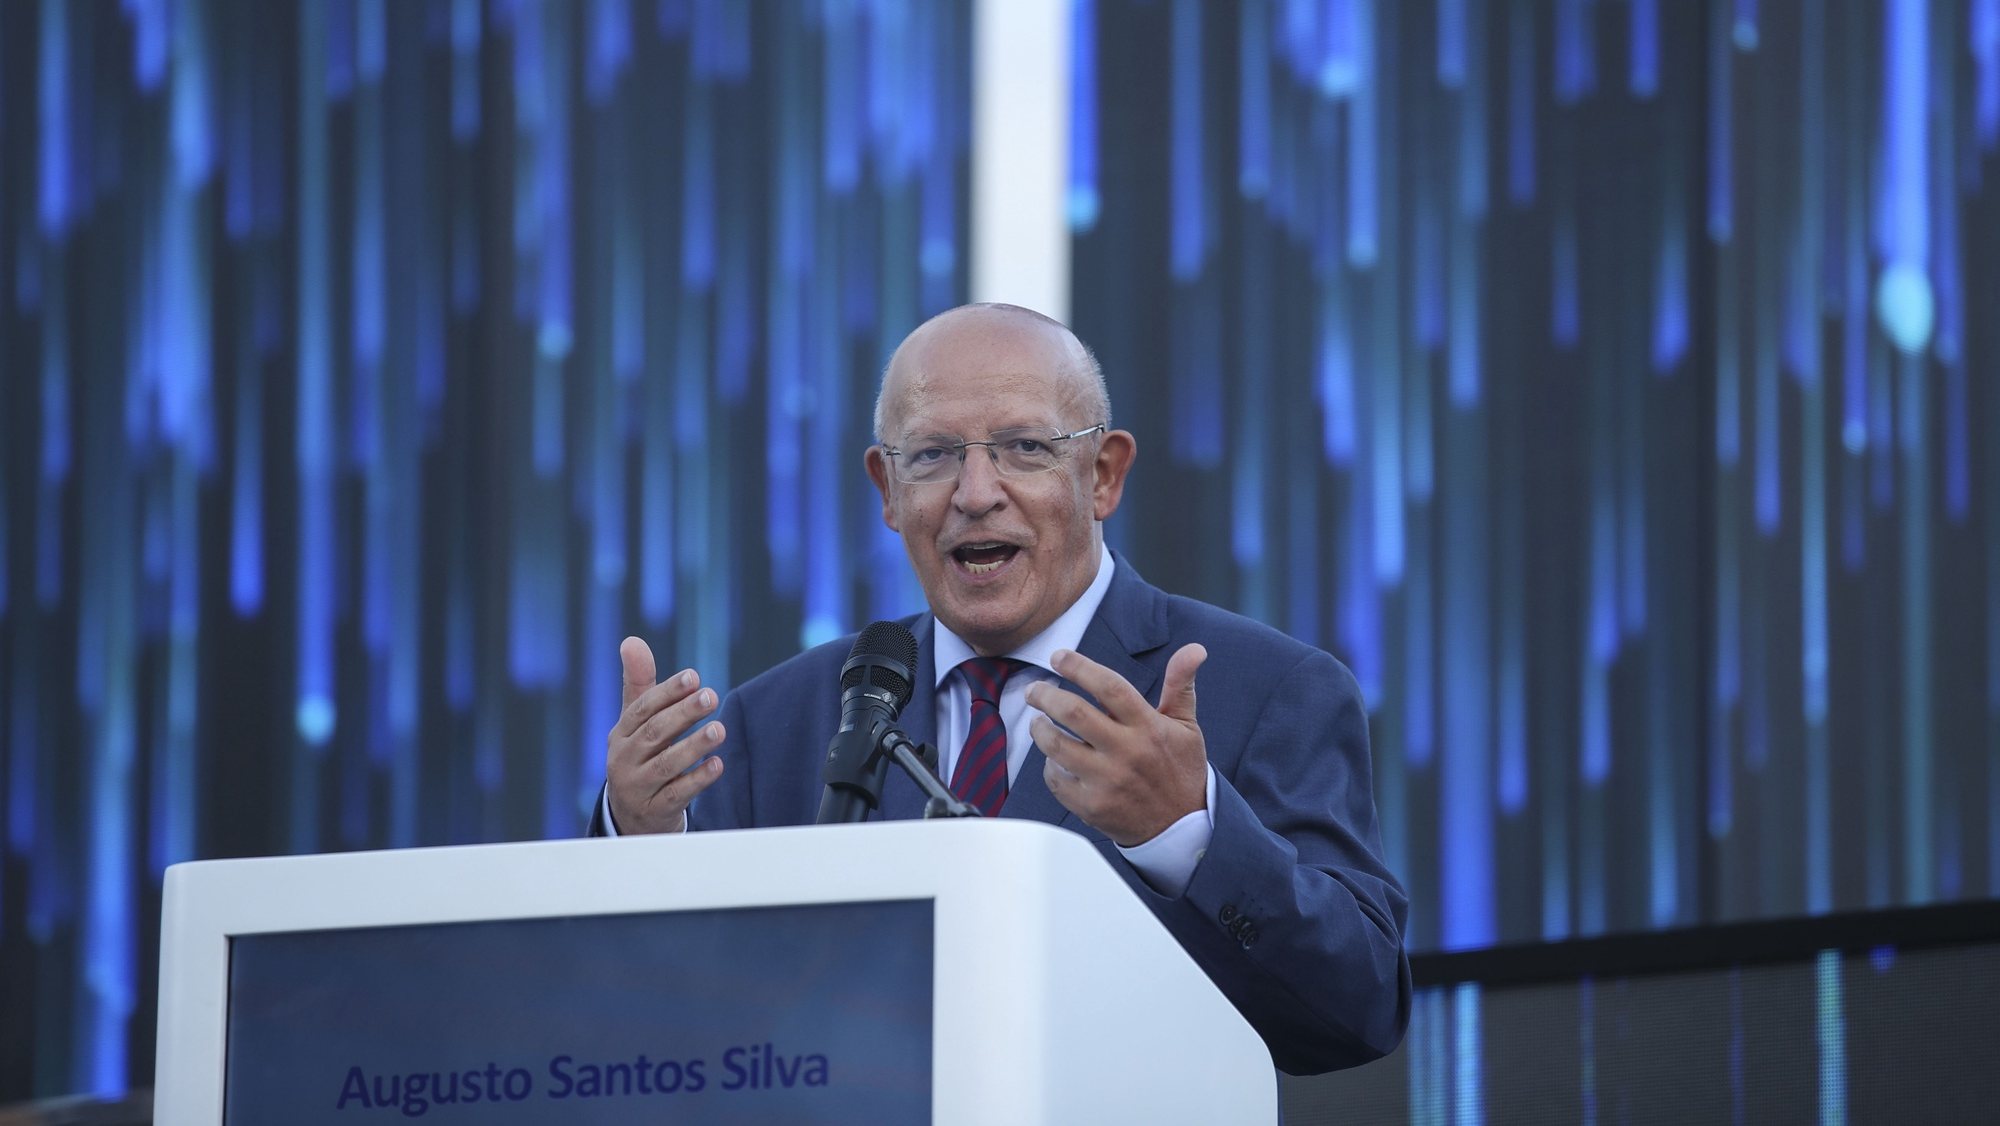 O presidente da Assembleia da República, Augusto Santos silva, intervém durante a cerimónia de entrega do prémio António Champalimaud de Visão, em Lisboa, 15 de setembro de 2022. ANTÓNIO COTRIM/LUSA